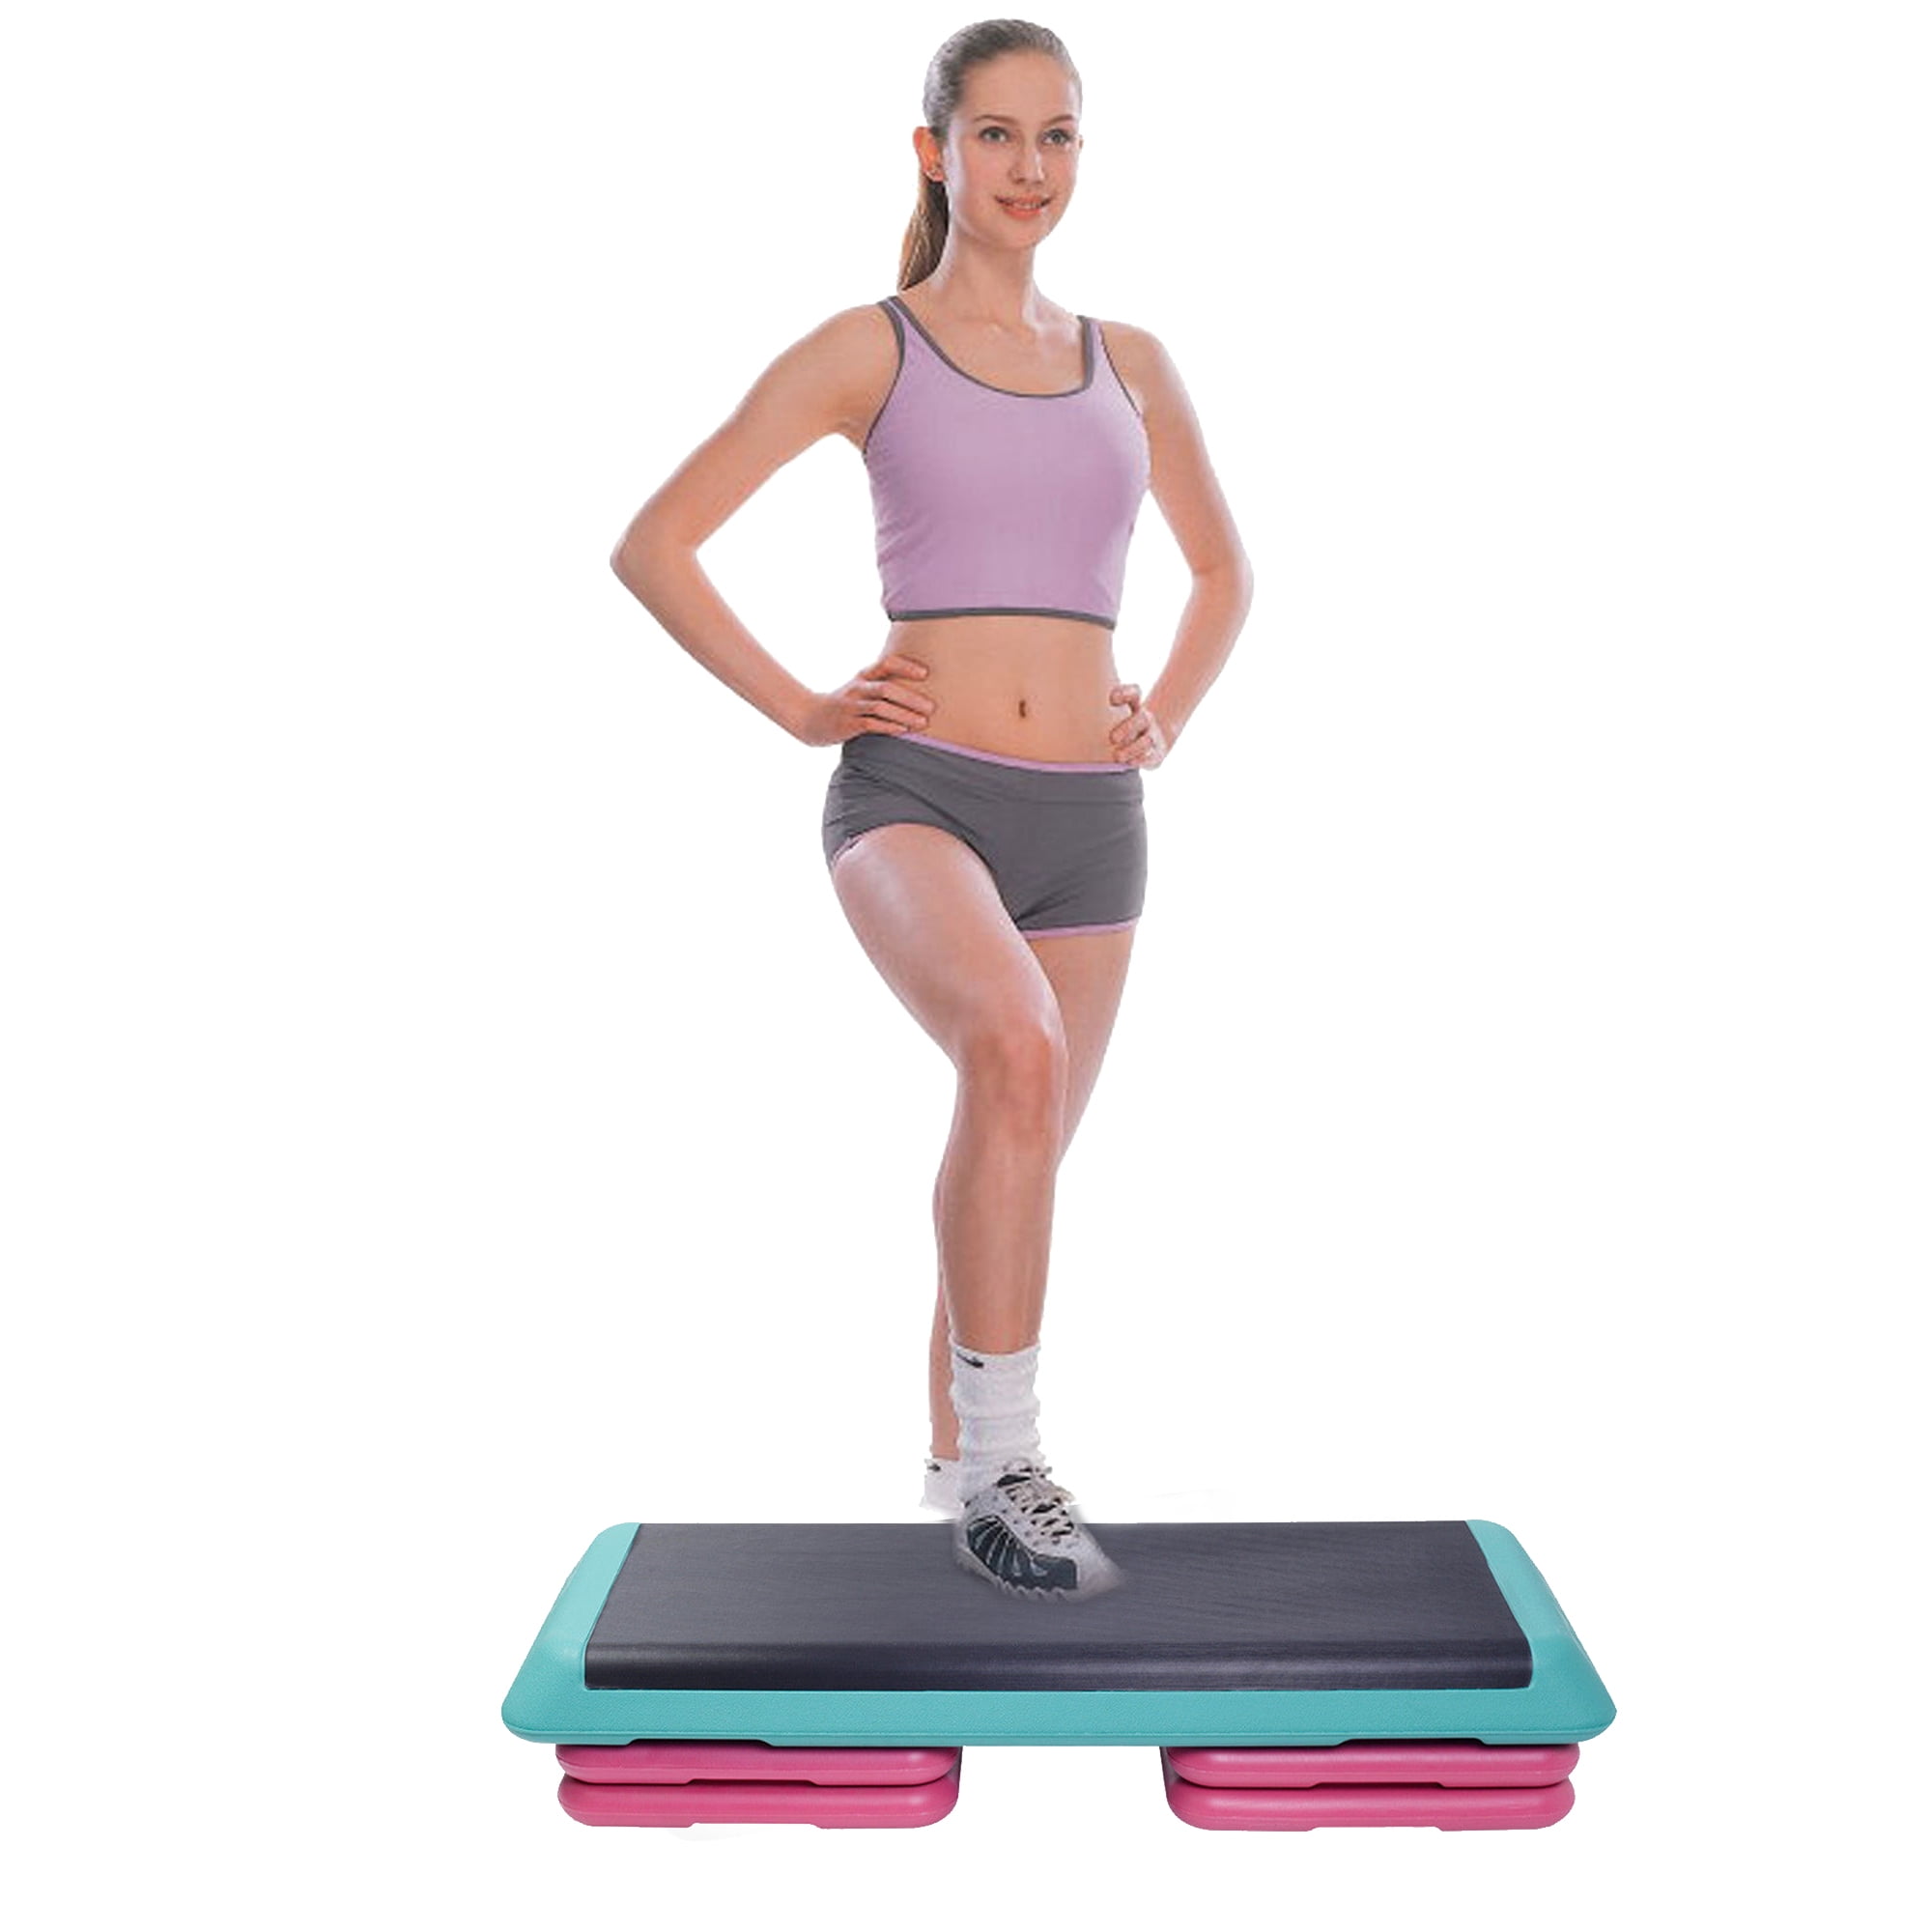 Original Fitness Aerobic Step Platform Exercise Stepper Cardio Workout Equipment 